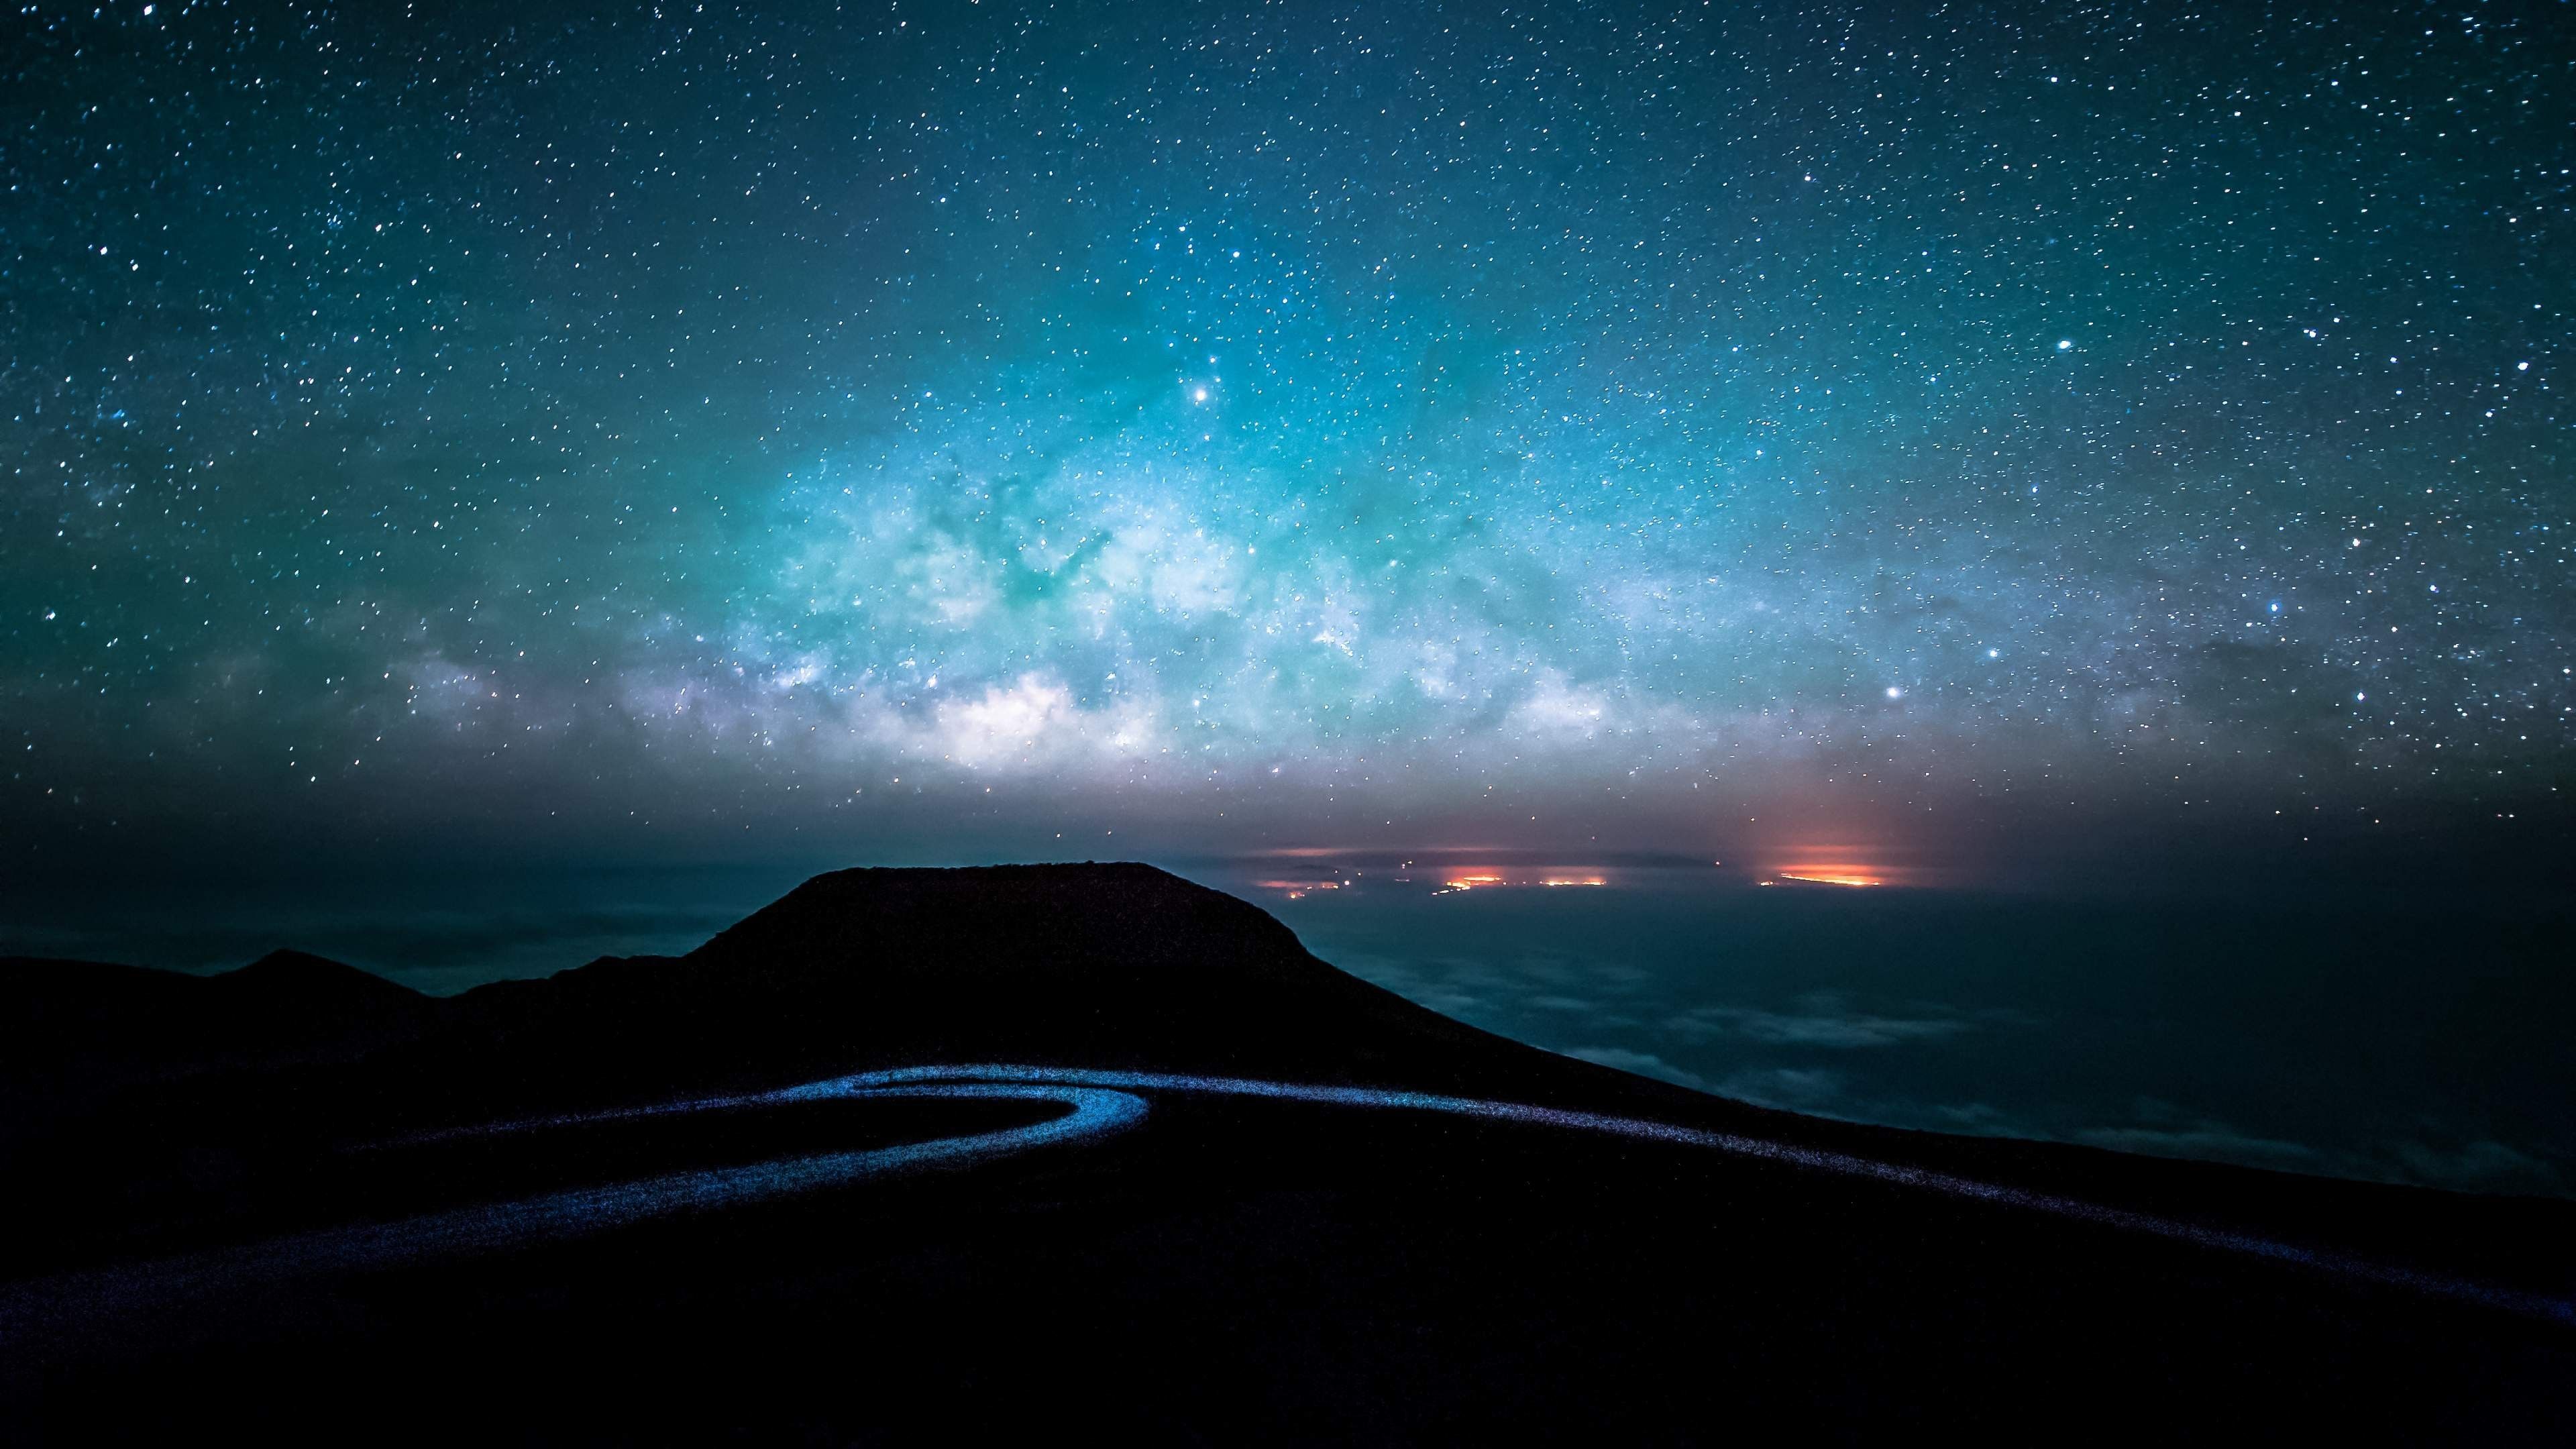 Bầu trời đêm luôn là nguồn cảm hứng tuyệt vời cho những người yêu thích tinh tú và đang tìm kiếm một hình nền để trang trí điện thoại hay máy tính. Hãy xem qua những hình ảnh bầu trời đêm đẹp mê hoặc này để cảm nhận sự thần tiên của vũ trụ.